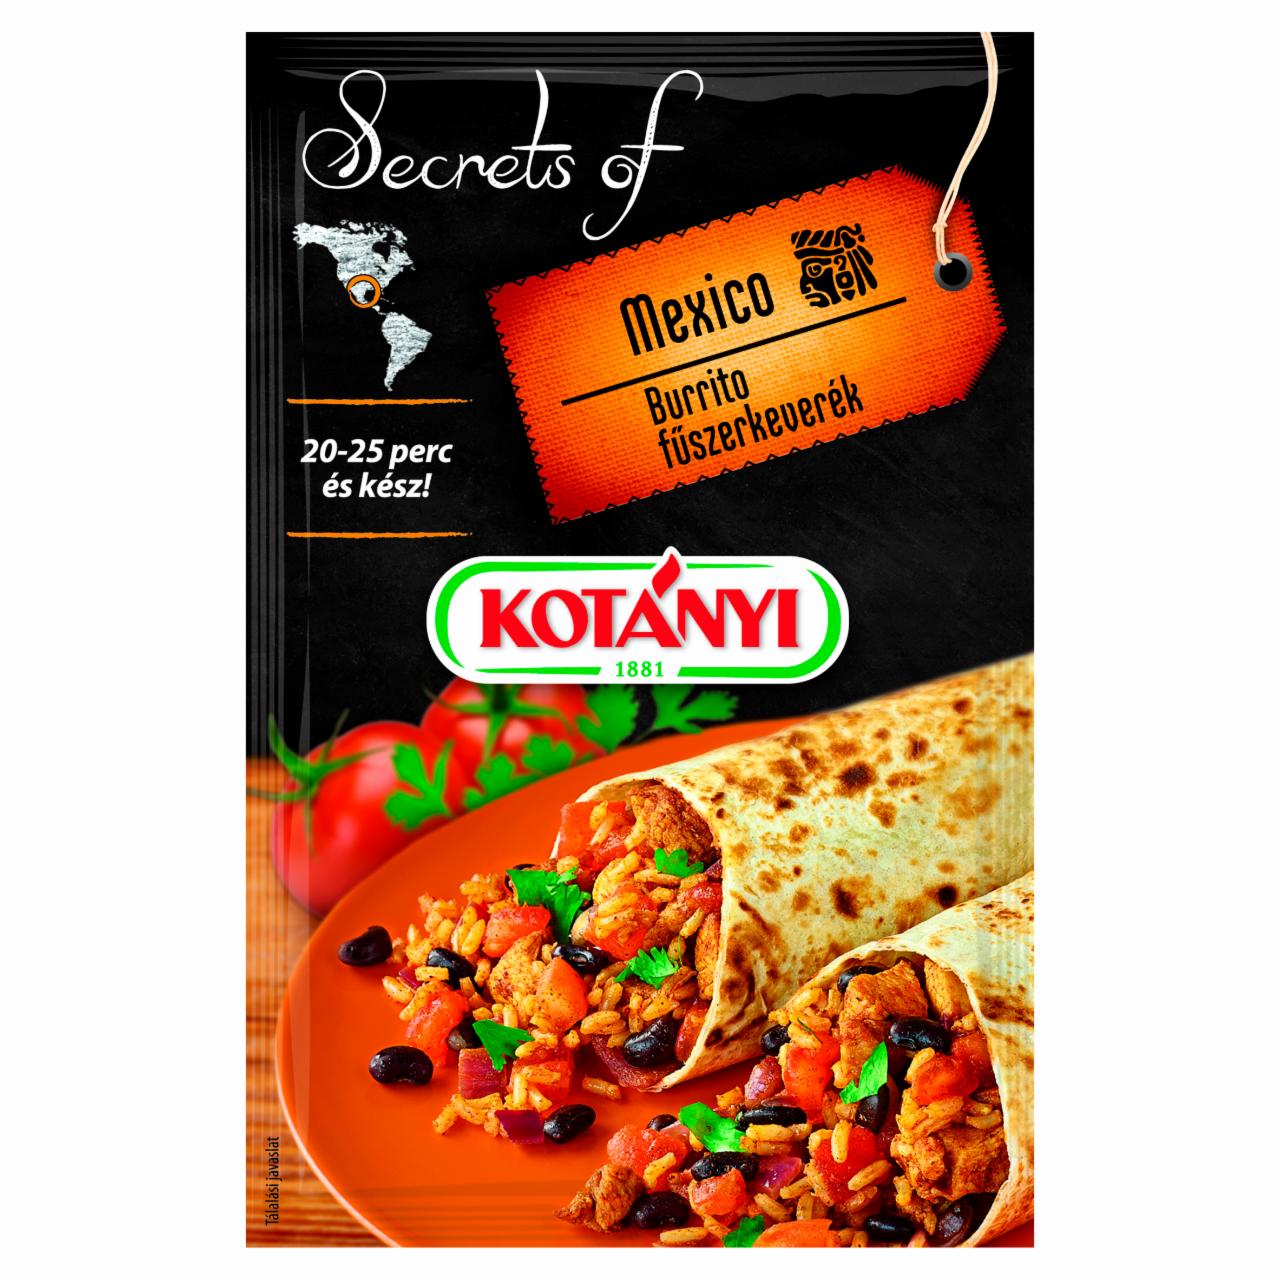 Képek - Kotányi Secrets of Mexico burrito fűszerkeverék 20 g